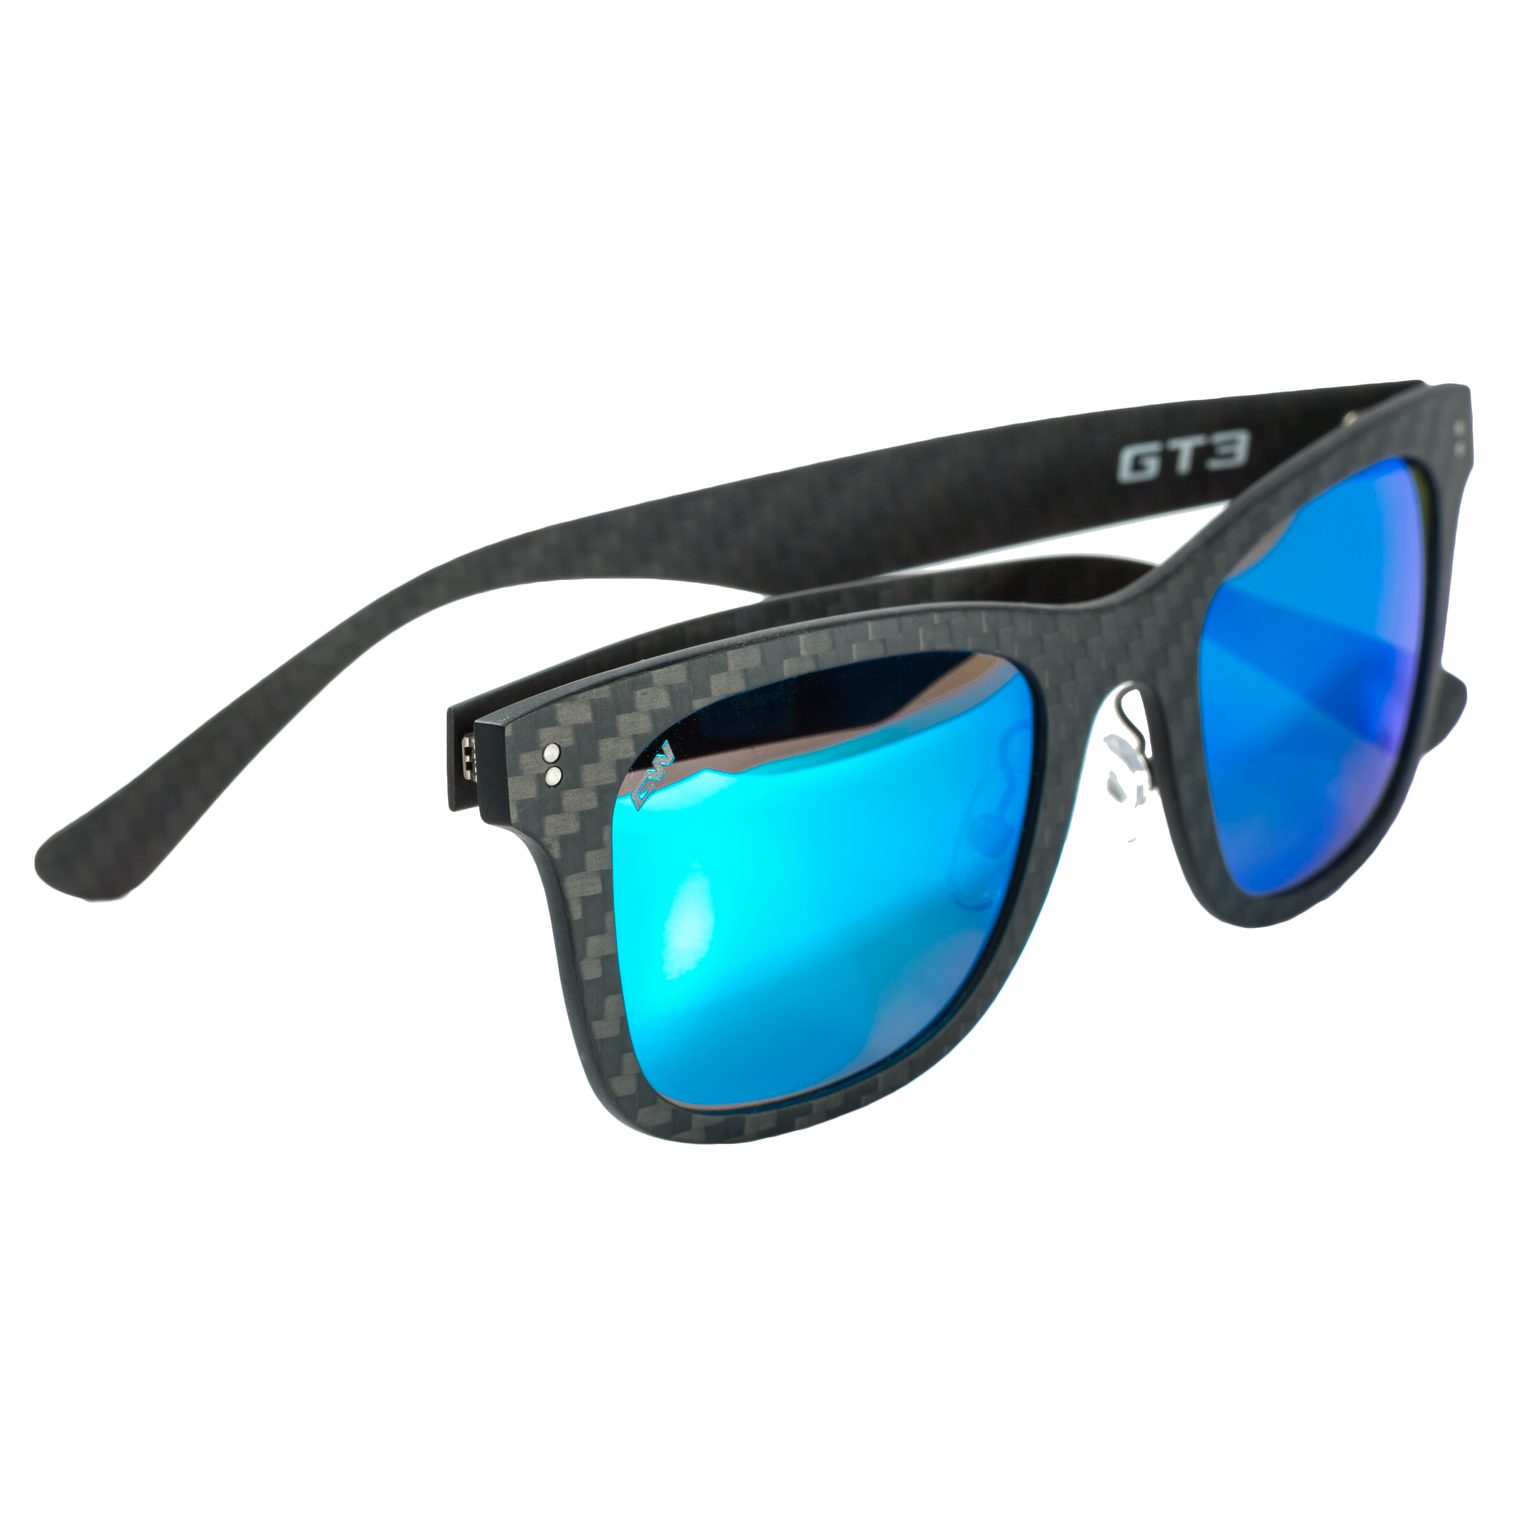 GT3 sunglasses Sea Blue Mirror 3